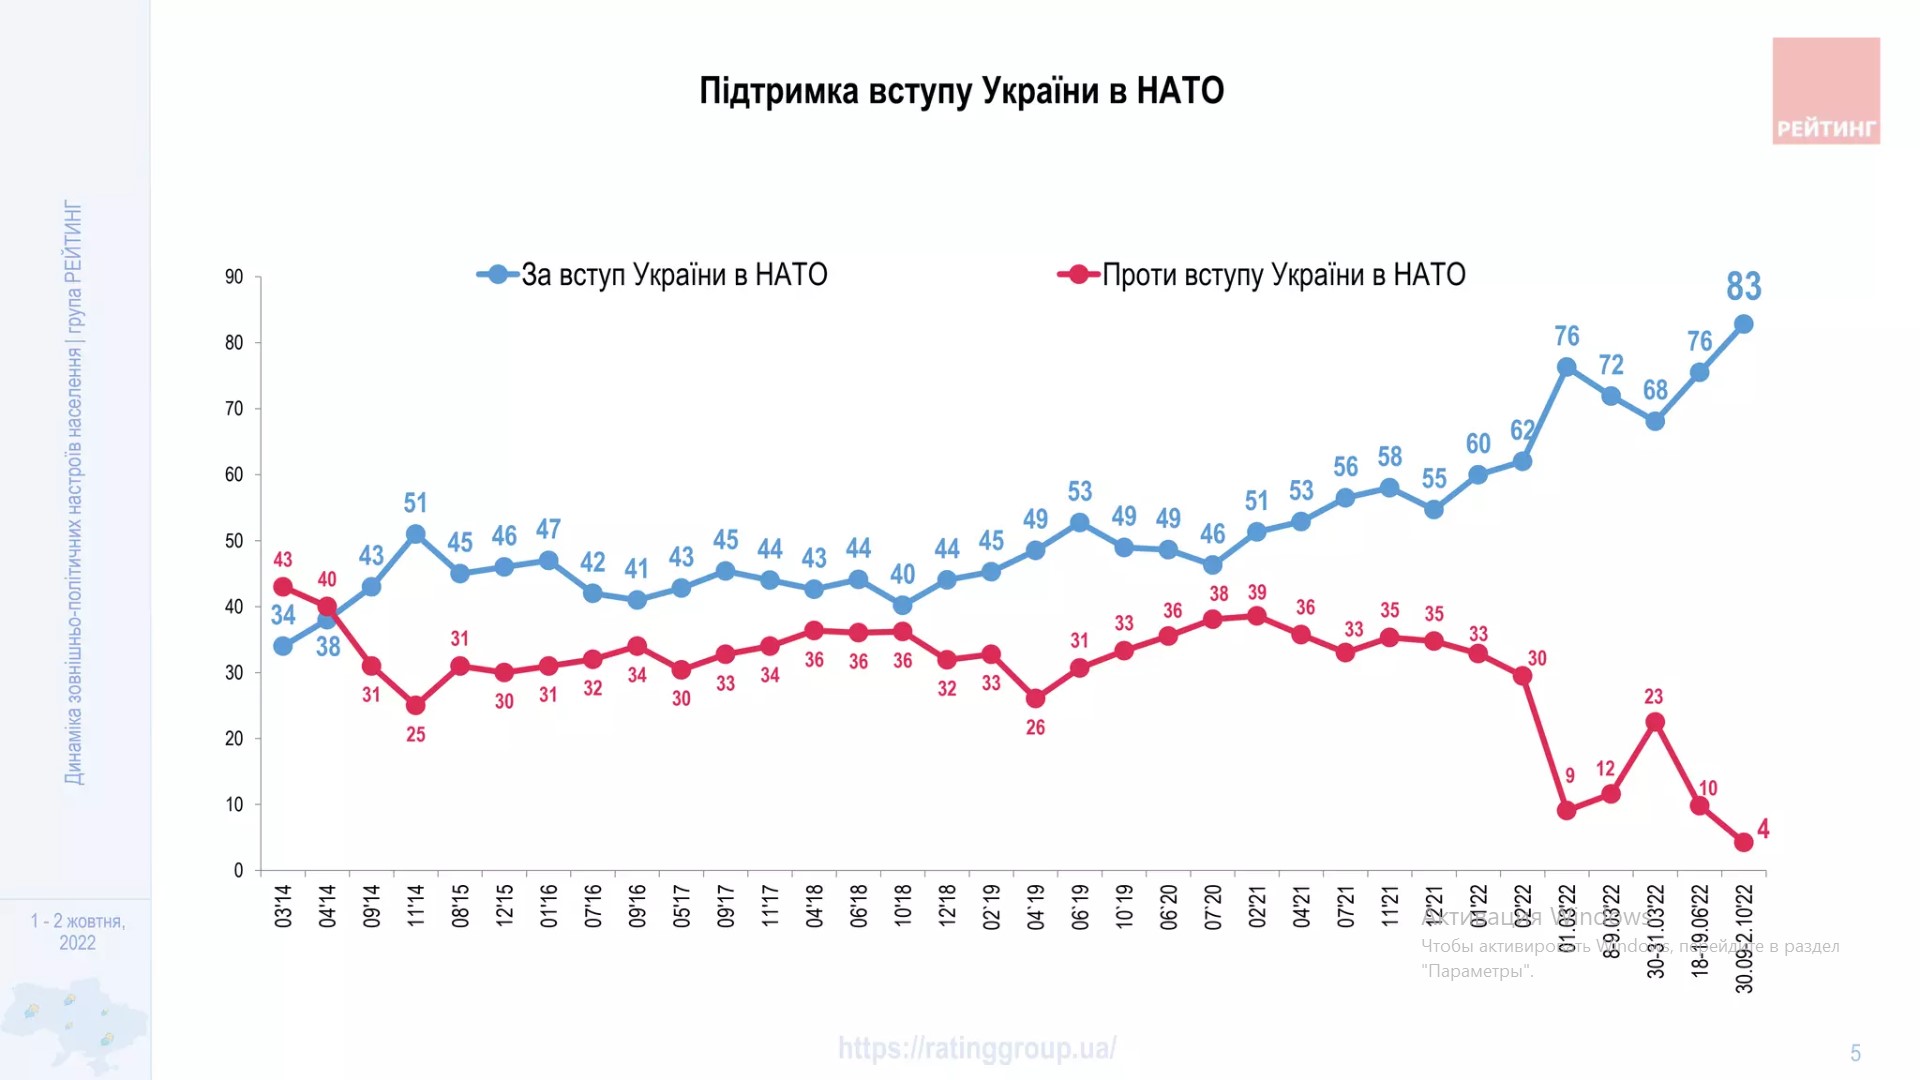 Поддержка вступления Украины в НАТО – на историческом максимуме: опрос Рейтинга